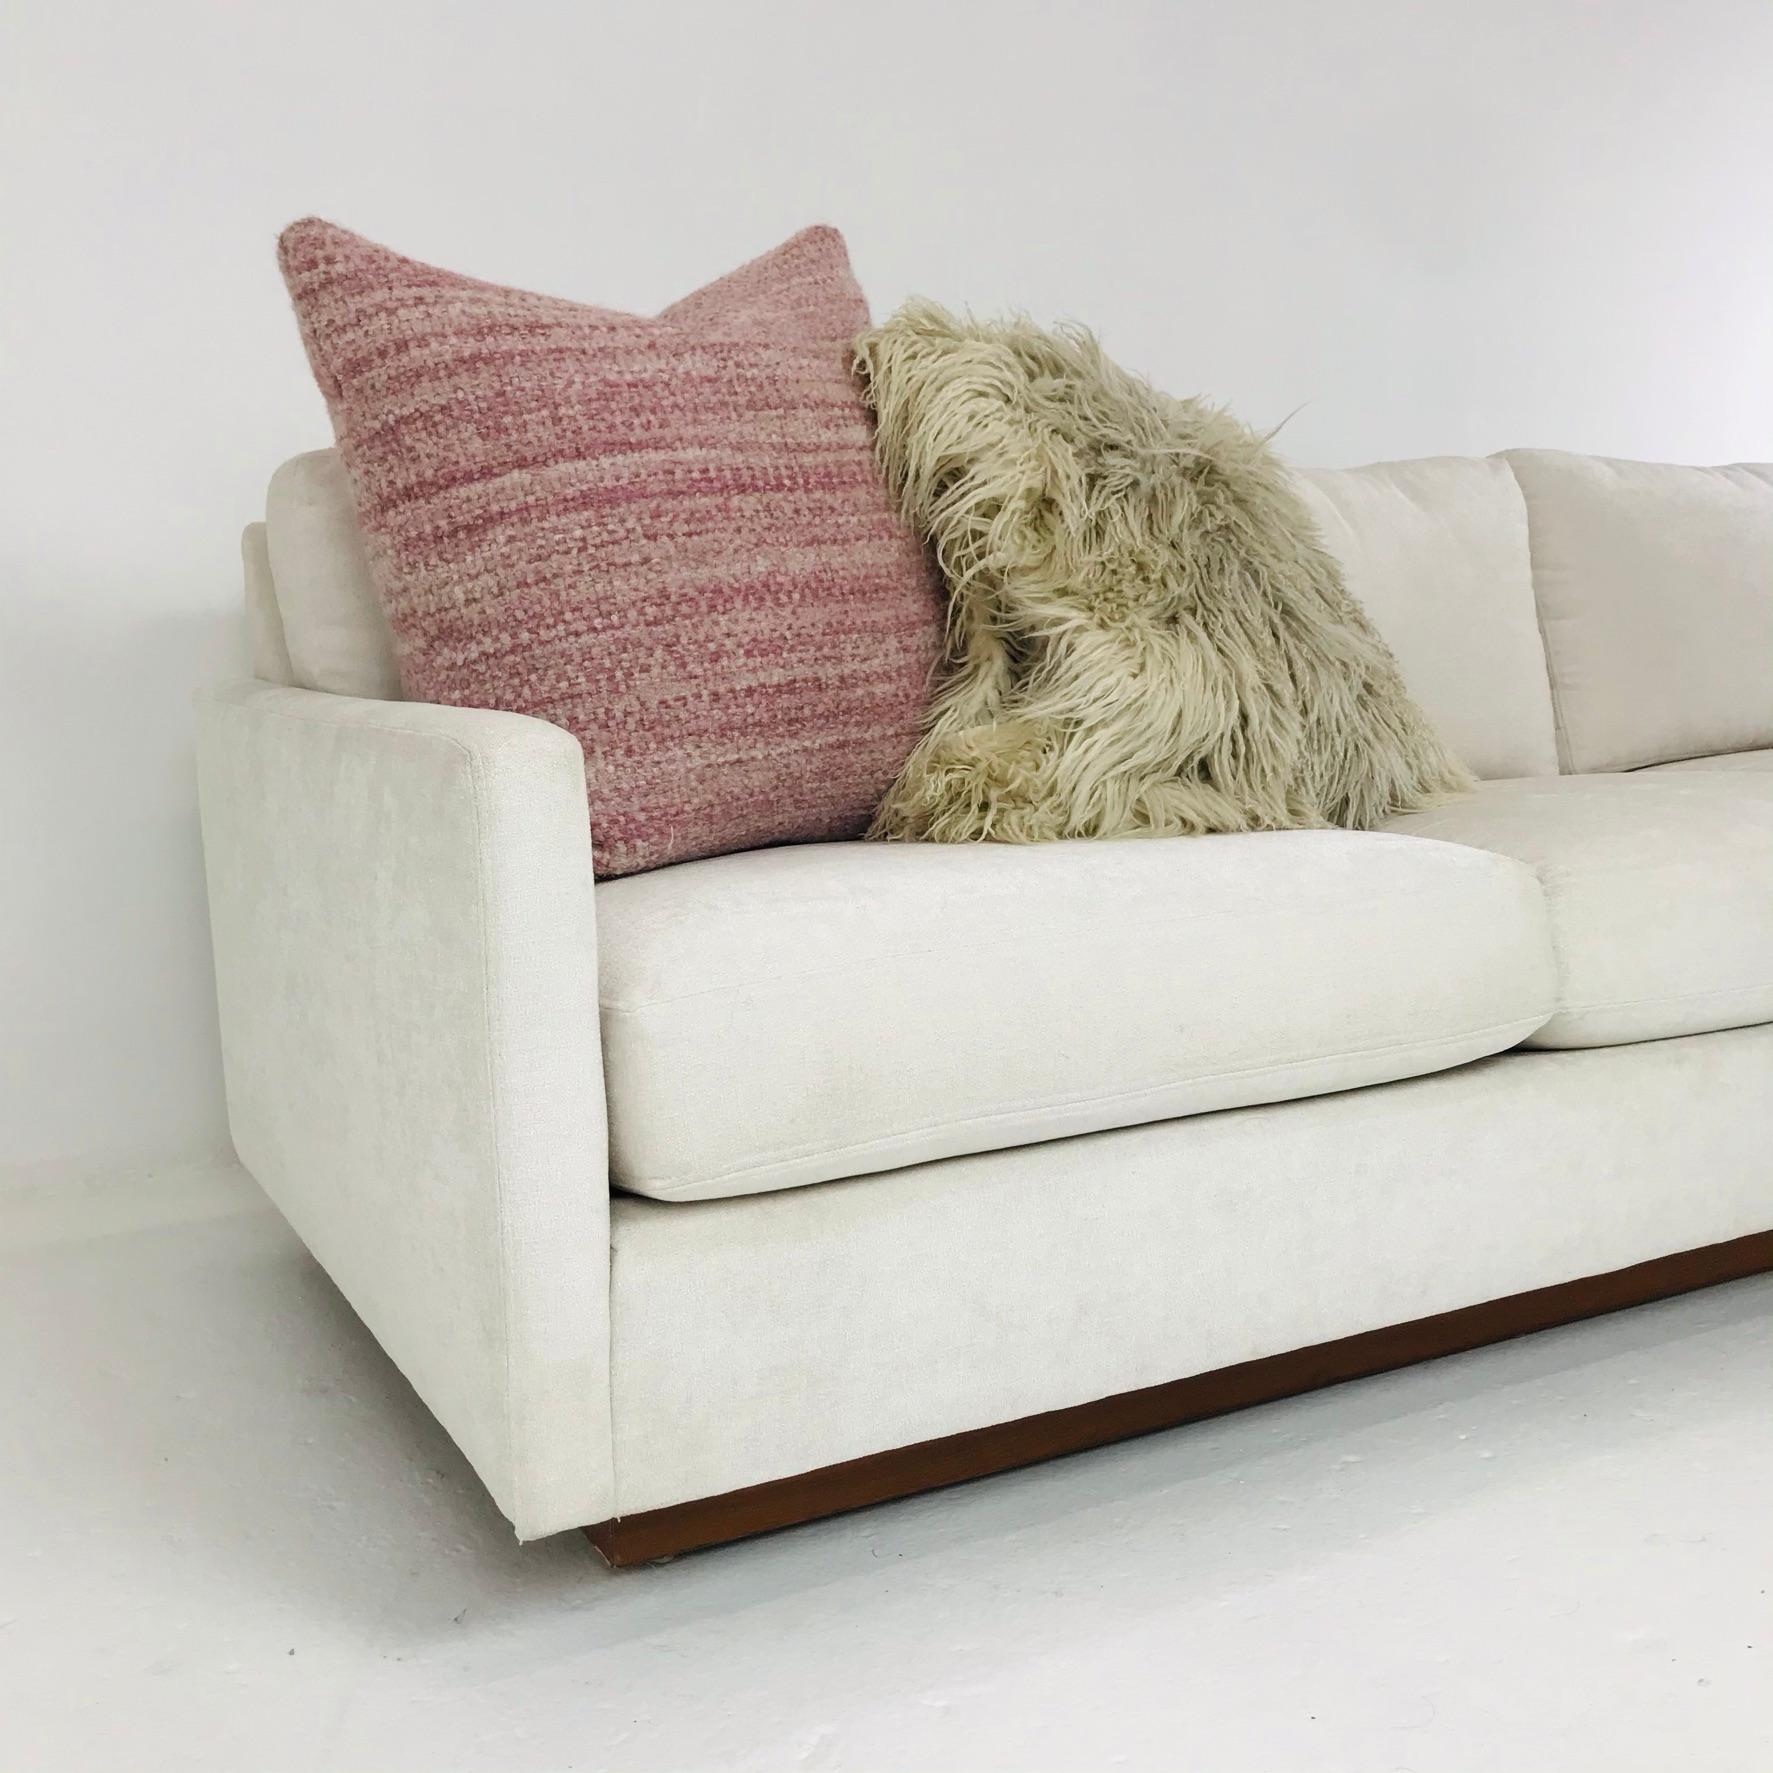 Upholstery Milo Baughman Tuxedo Sofa